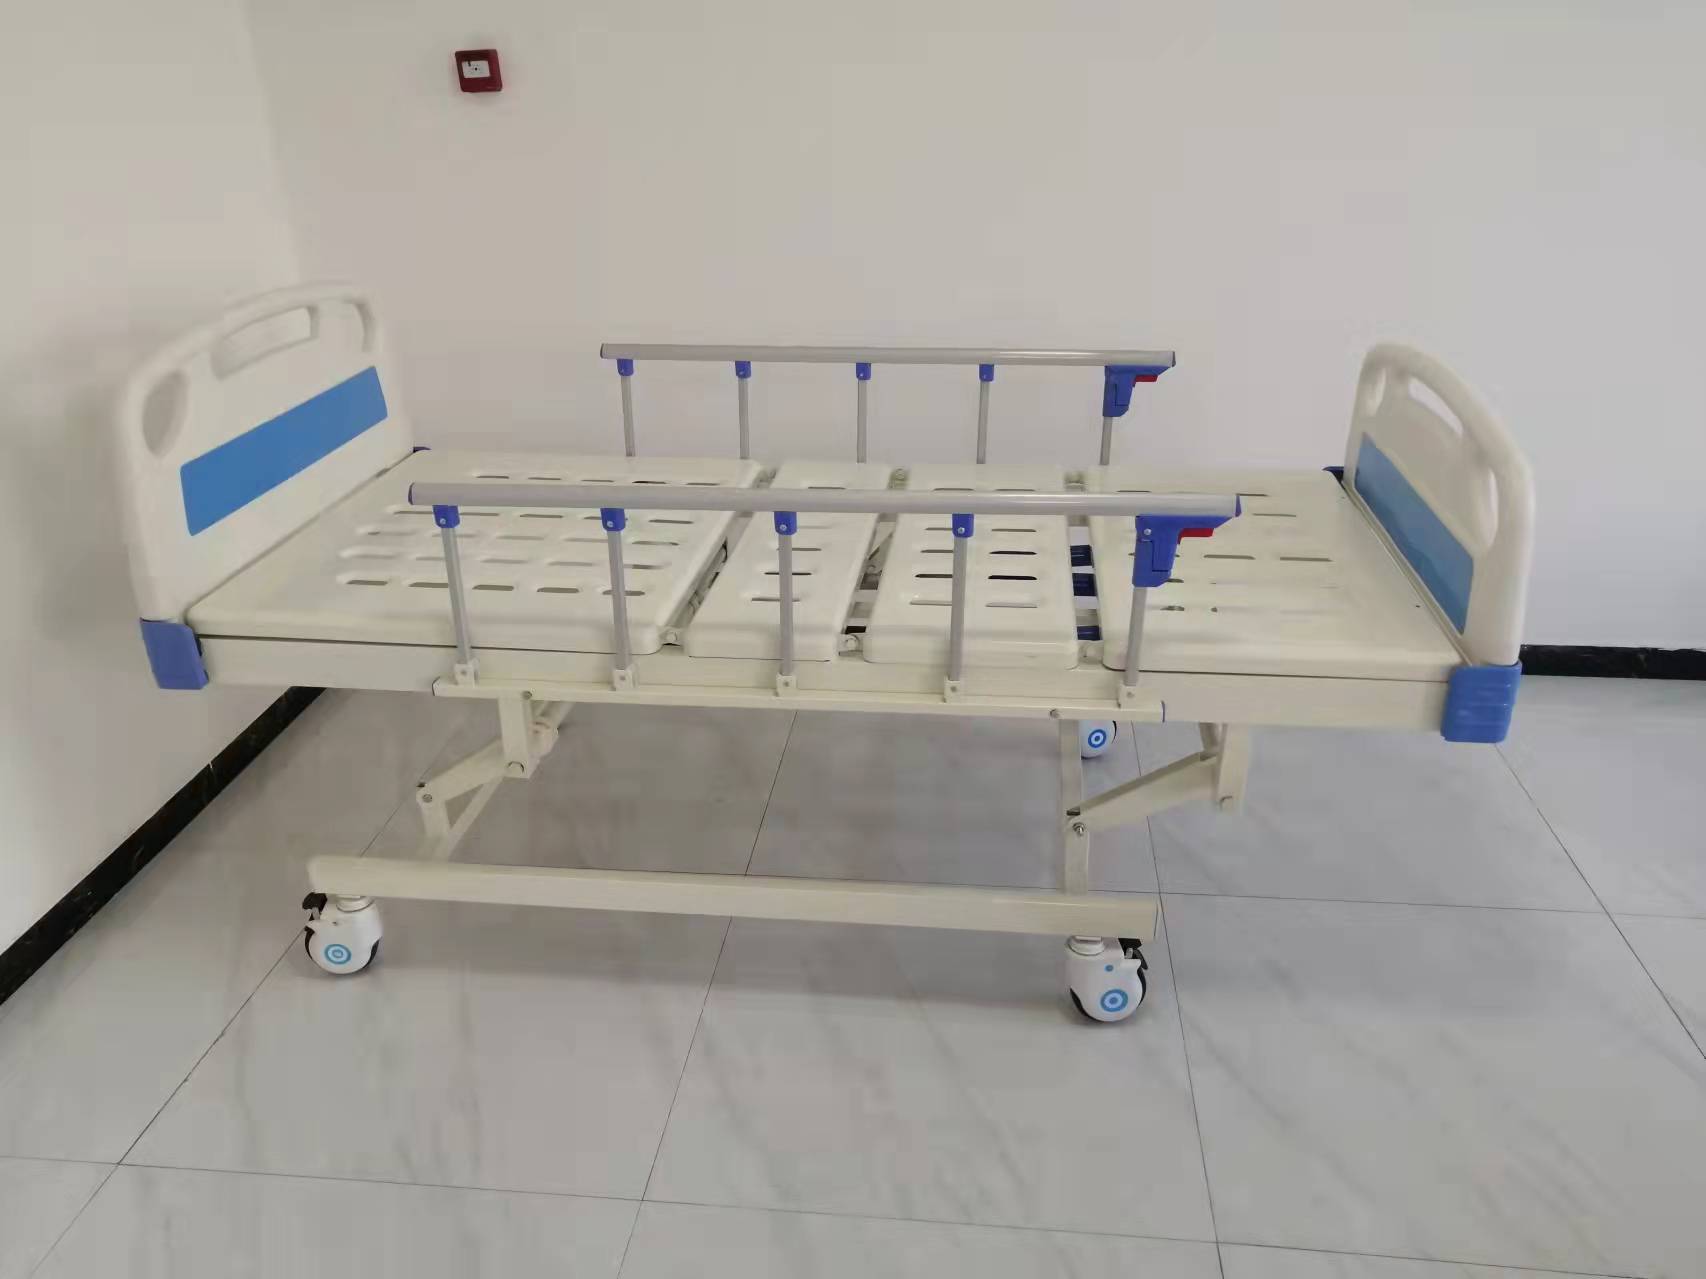 trīsfunkciju manuāla slimnīcas gulta